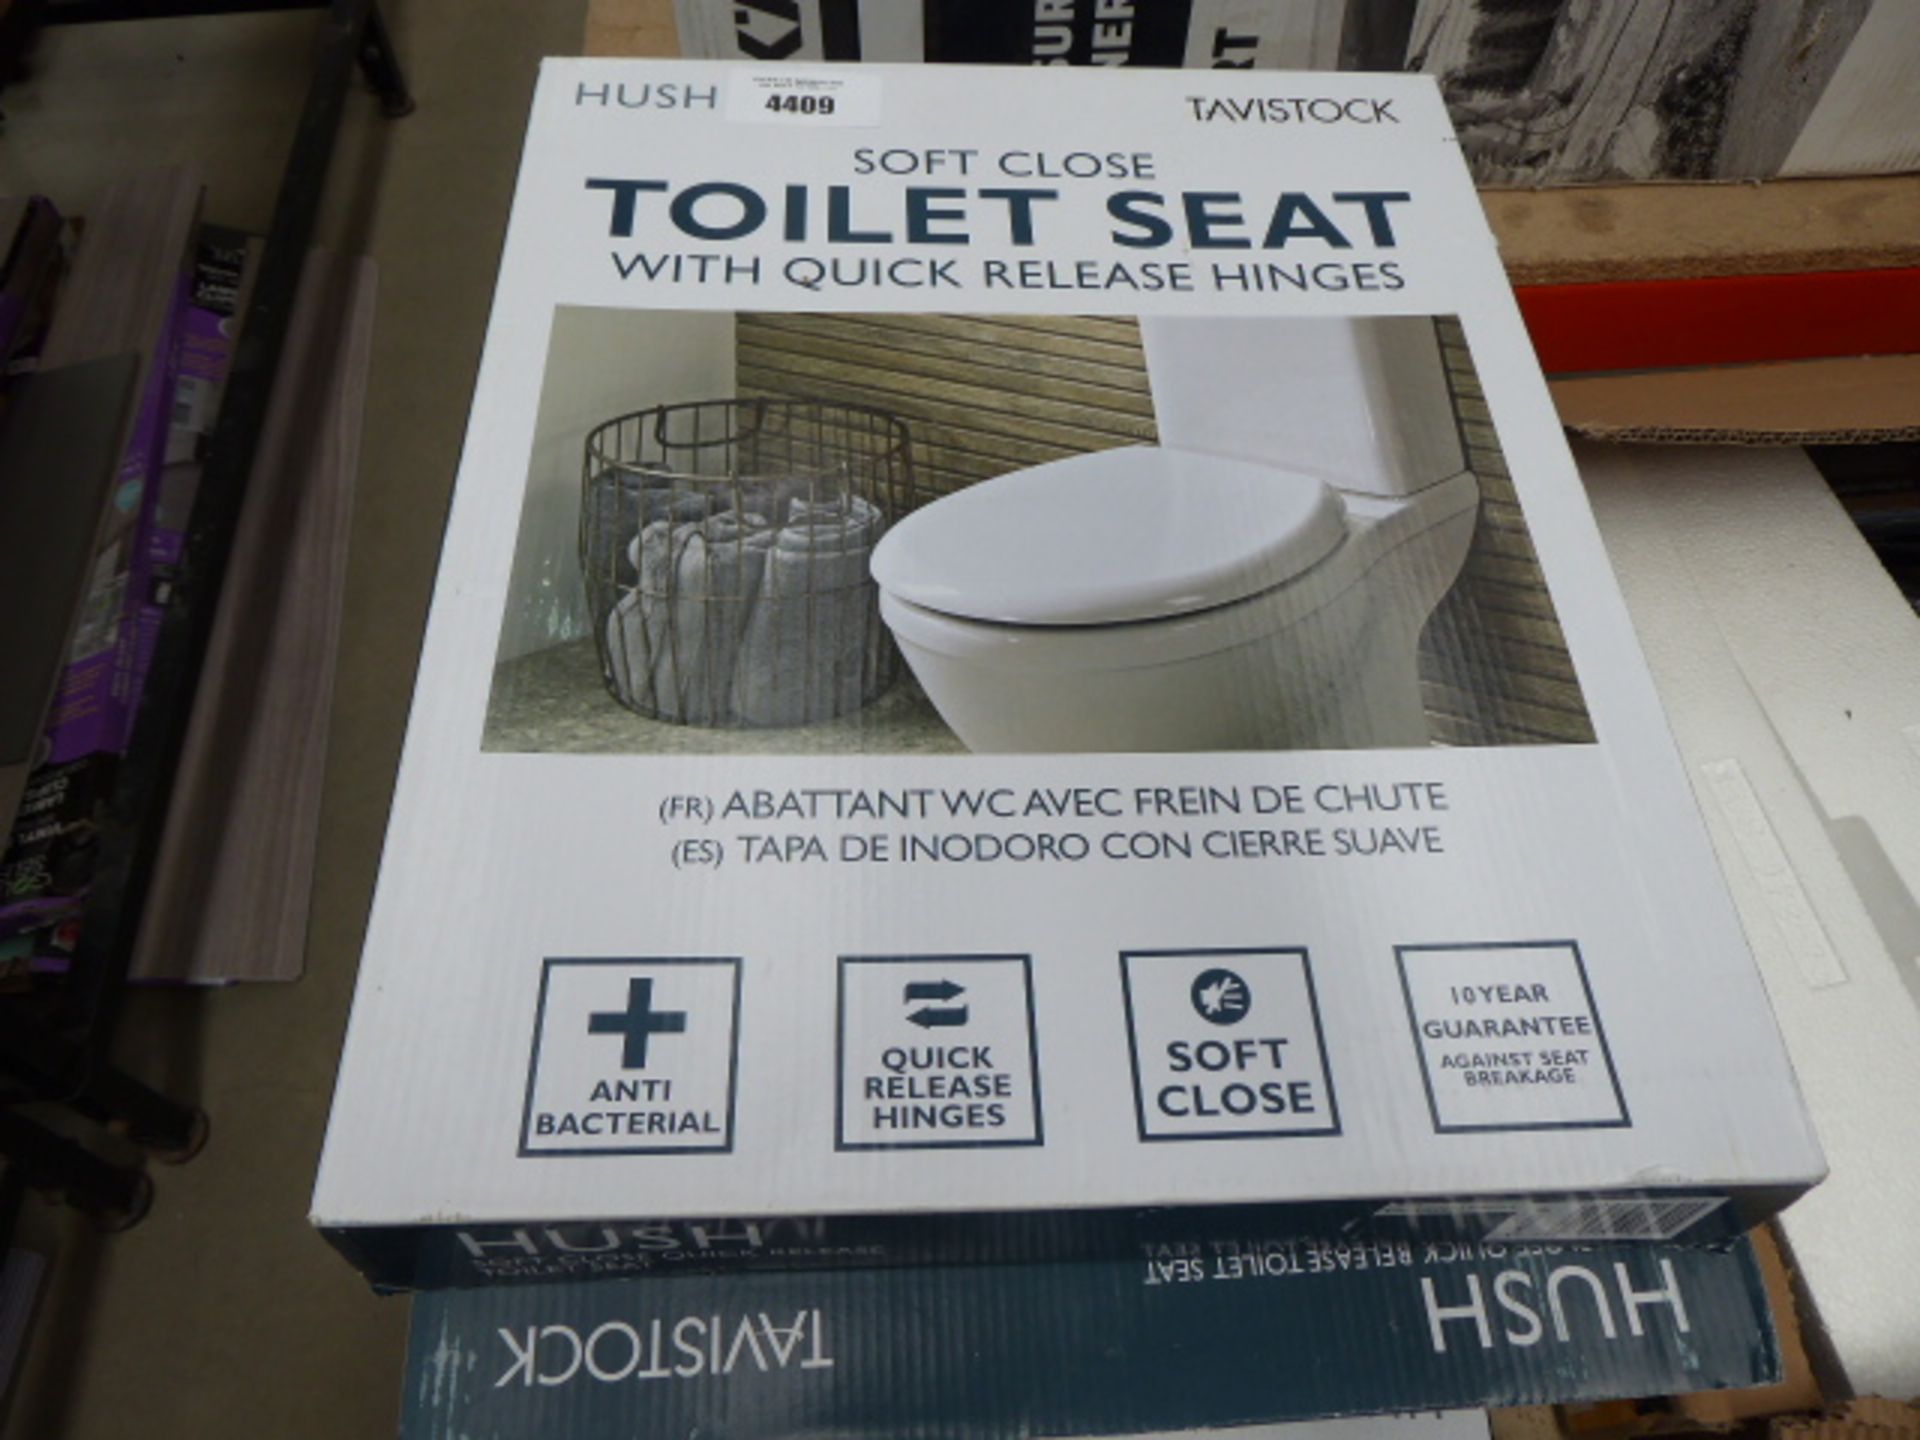 6 Tavistock toilet seats